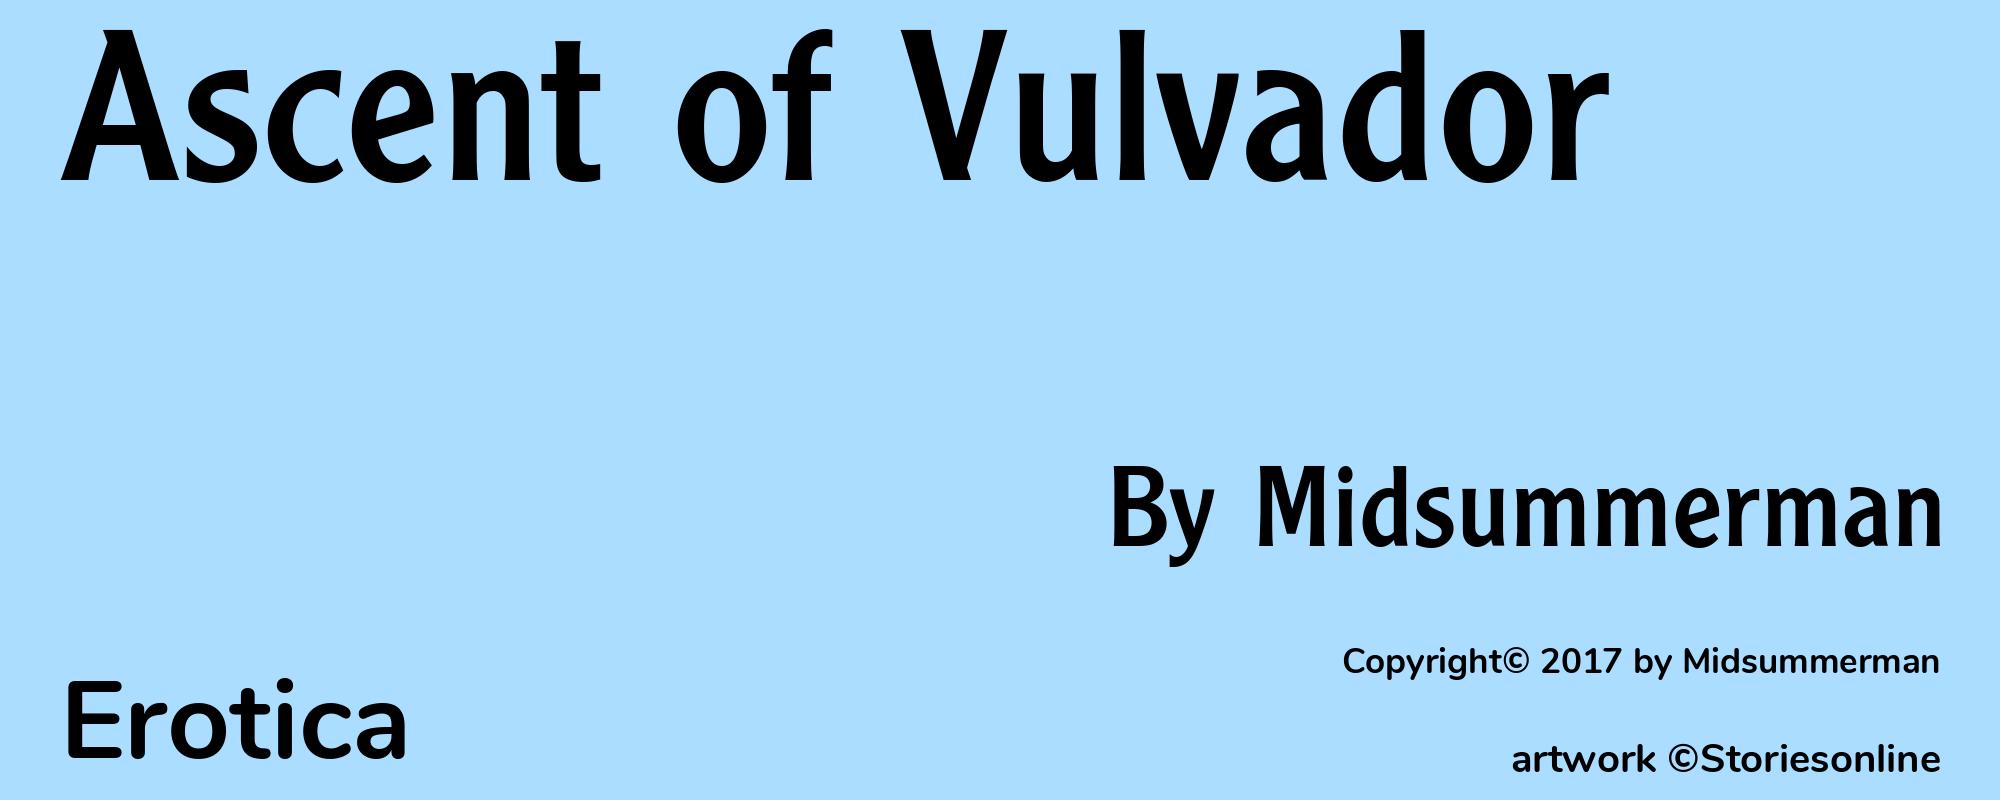 Ascent of Vulvador - Cover